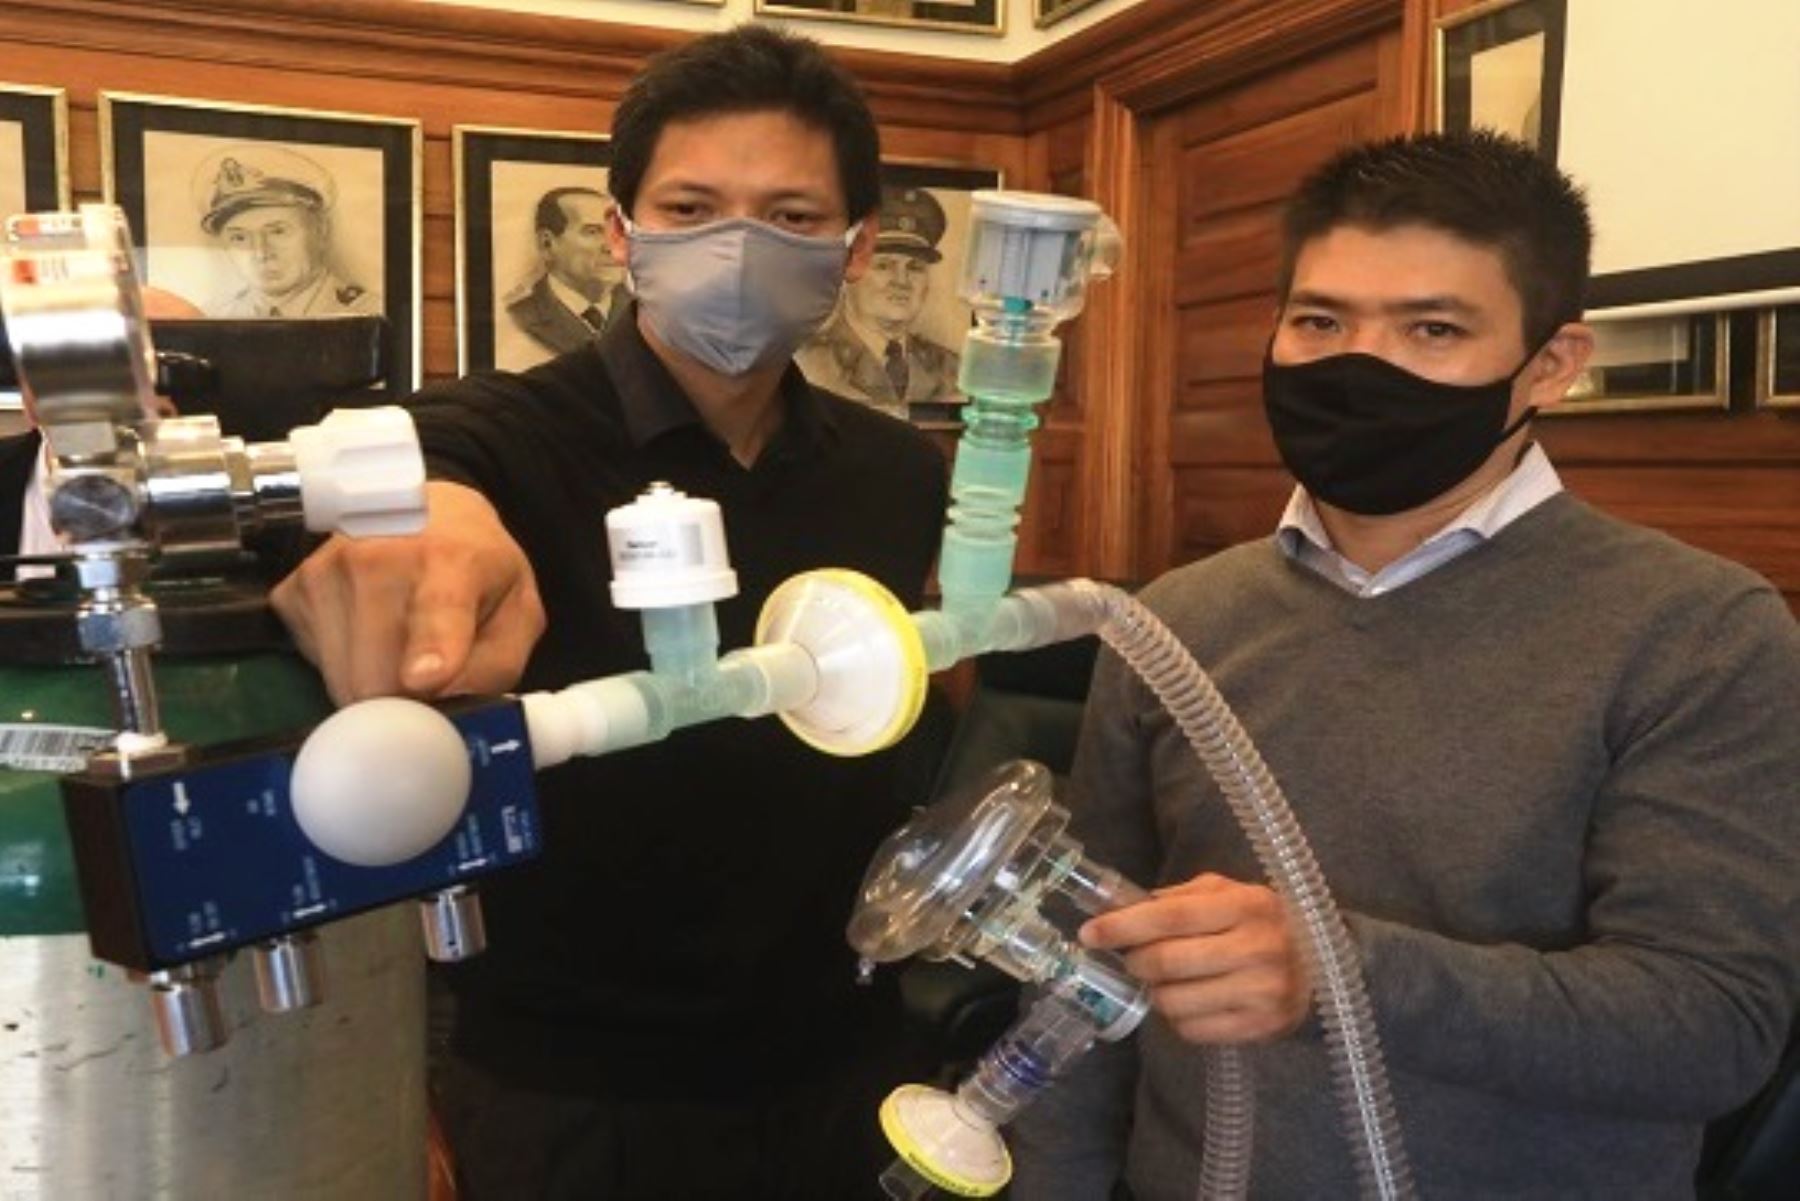 Coronavirus: Minsa recibe 20 reguladores de oxígeno fabricados por ingenieros peruanos